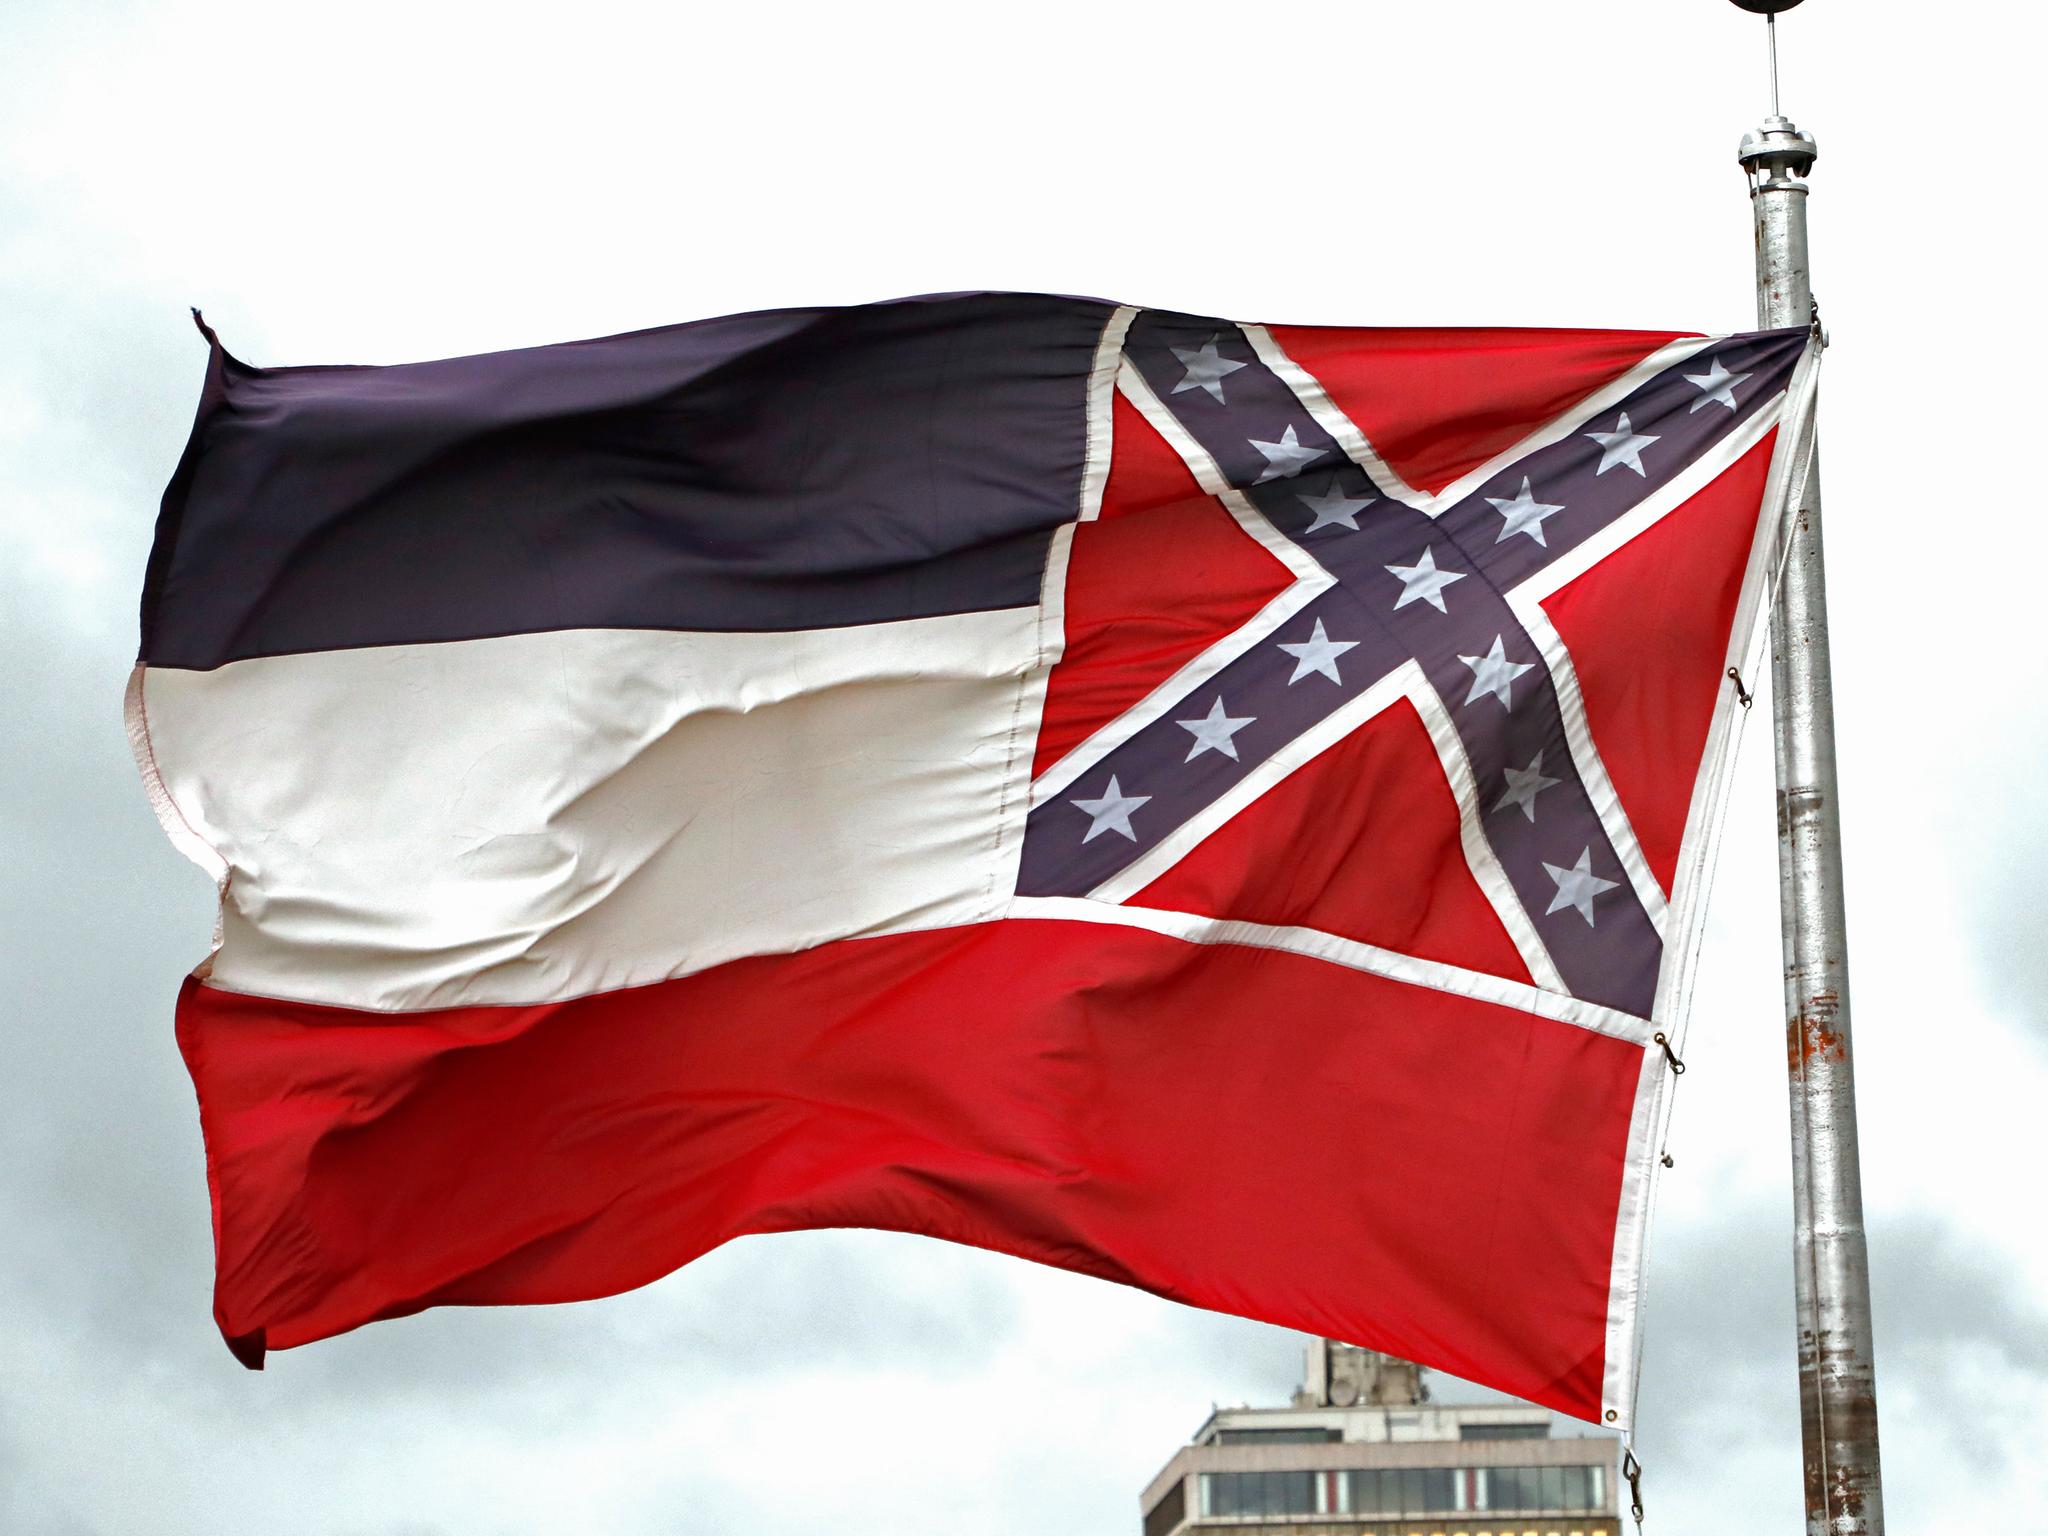 US-Bundesstaat Mississippi bekommt neue Flagge - Kultur - SZ.de